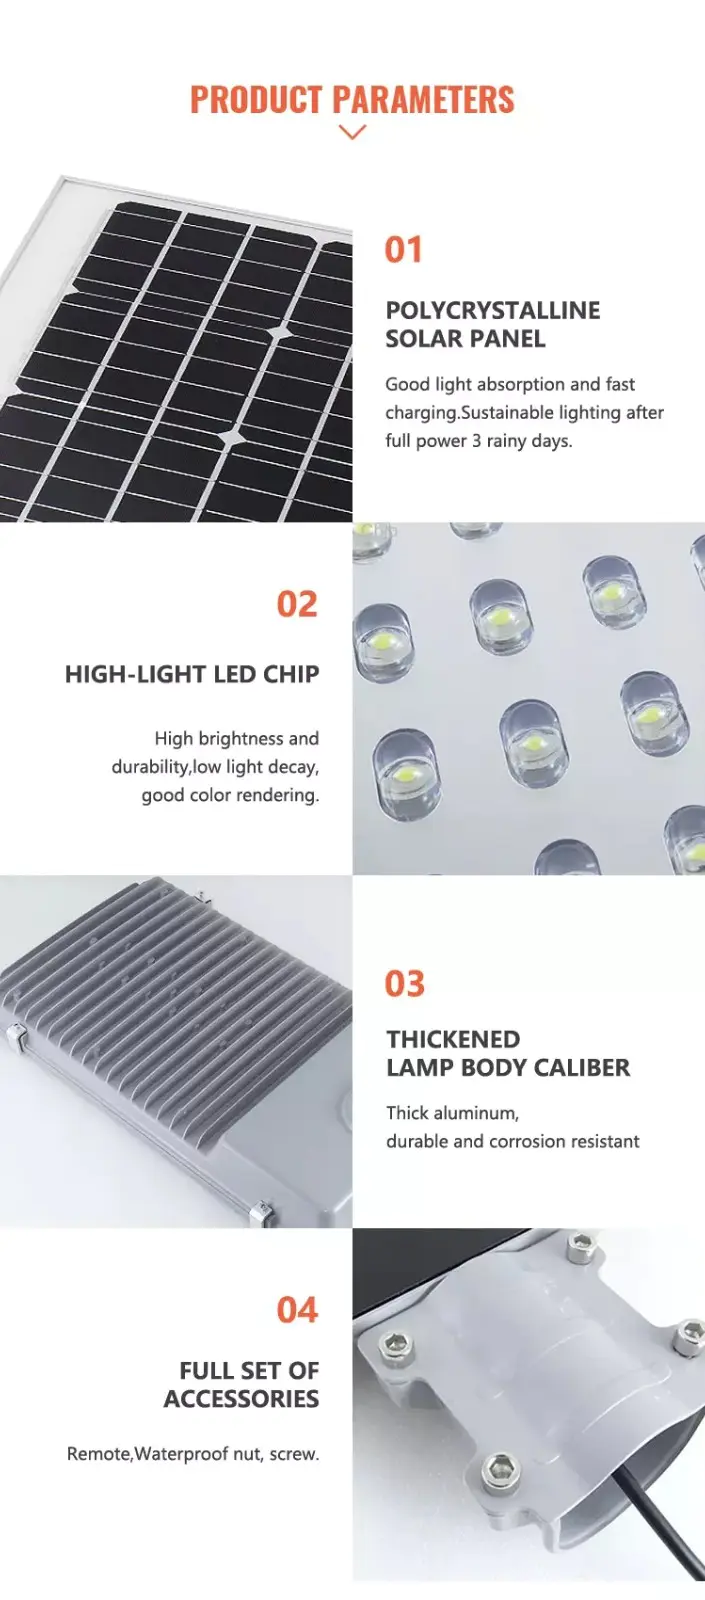 Litel Technology led sensor 18 watt solar led street light at discount for lawn